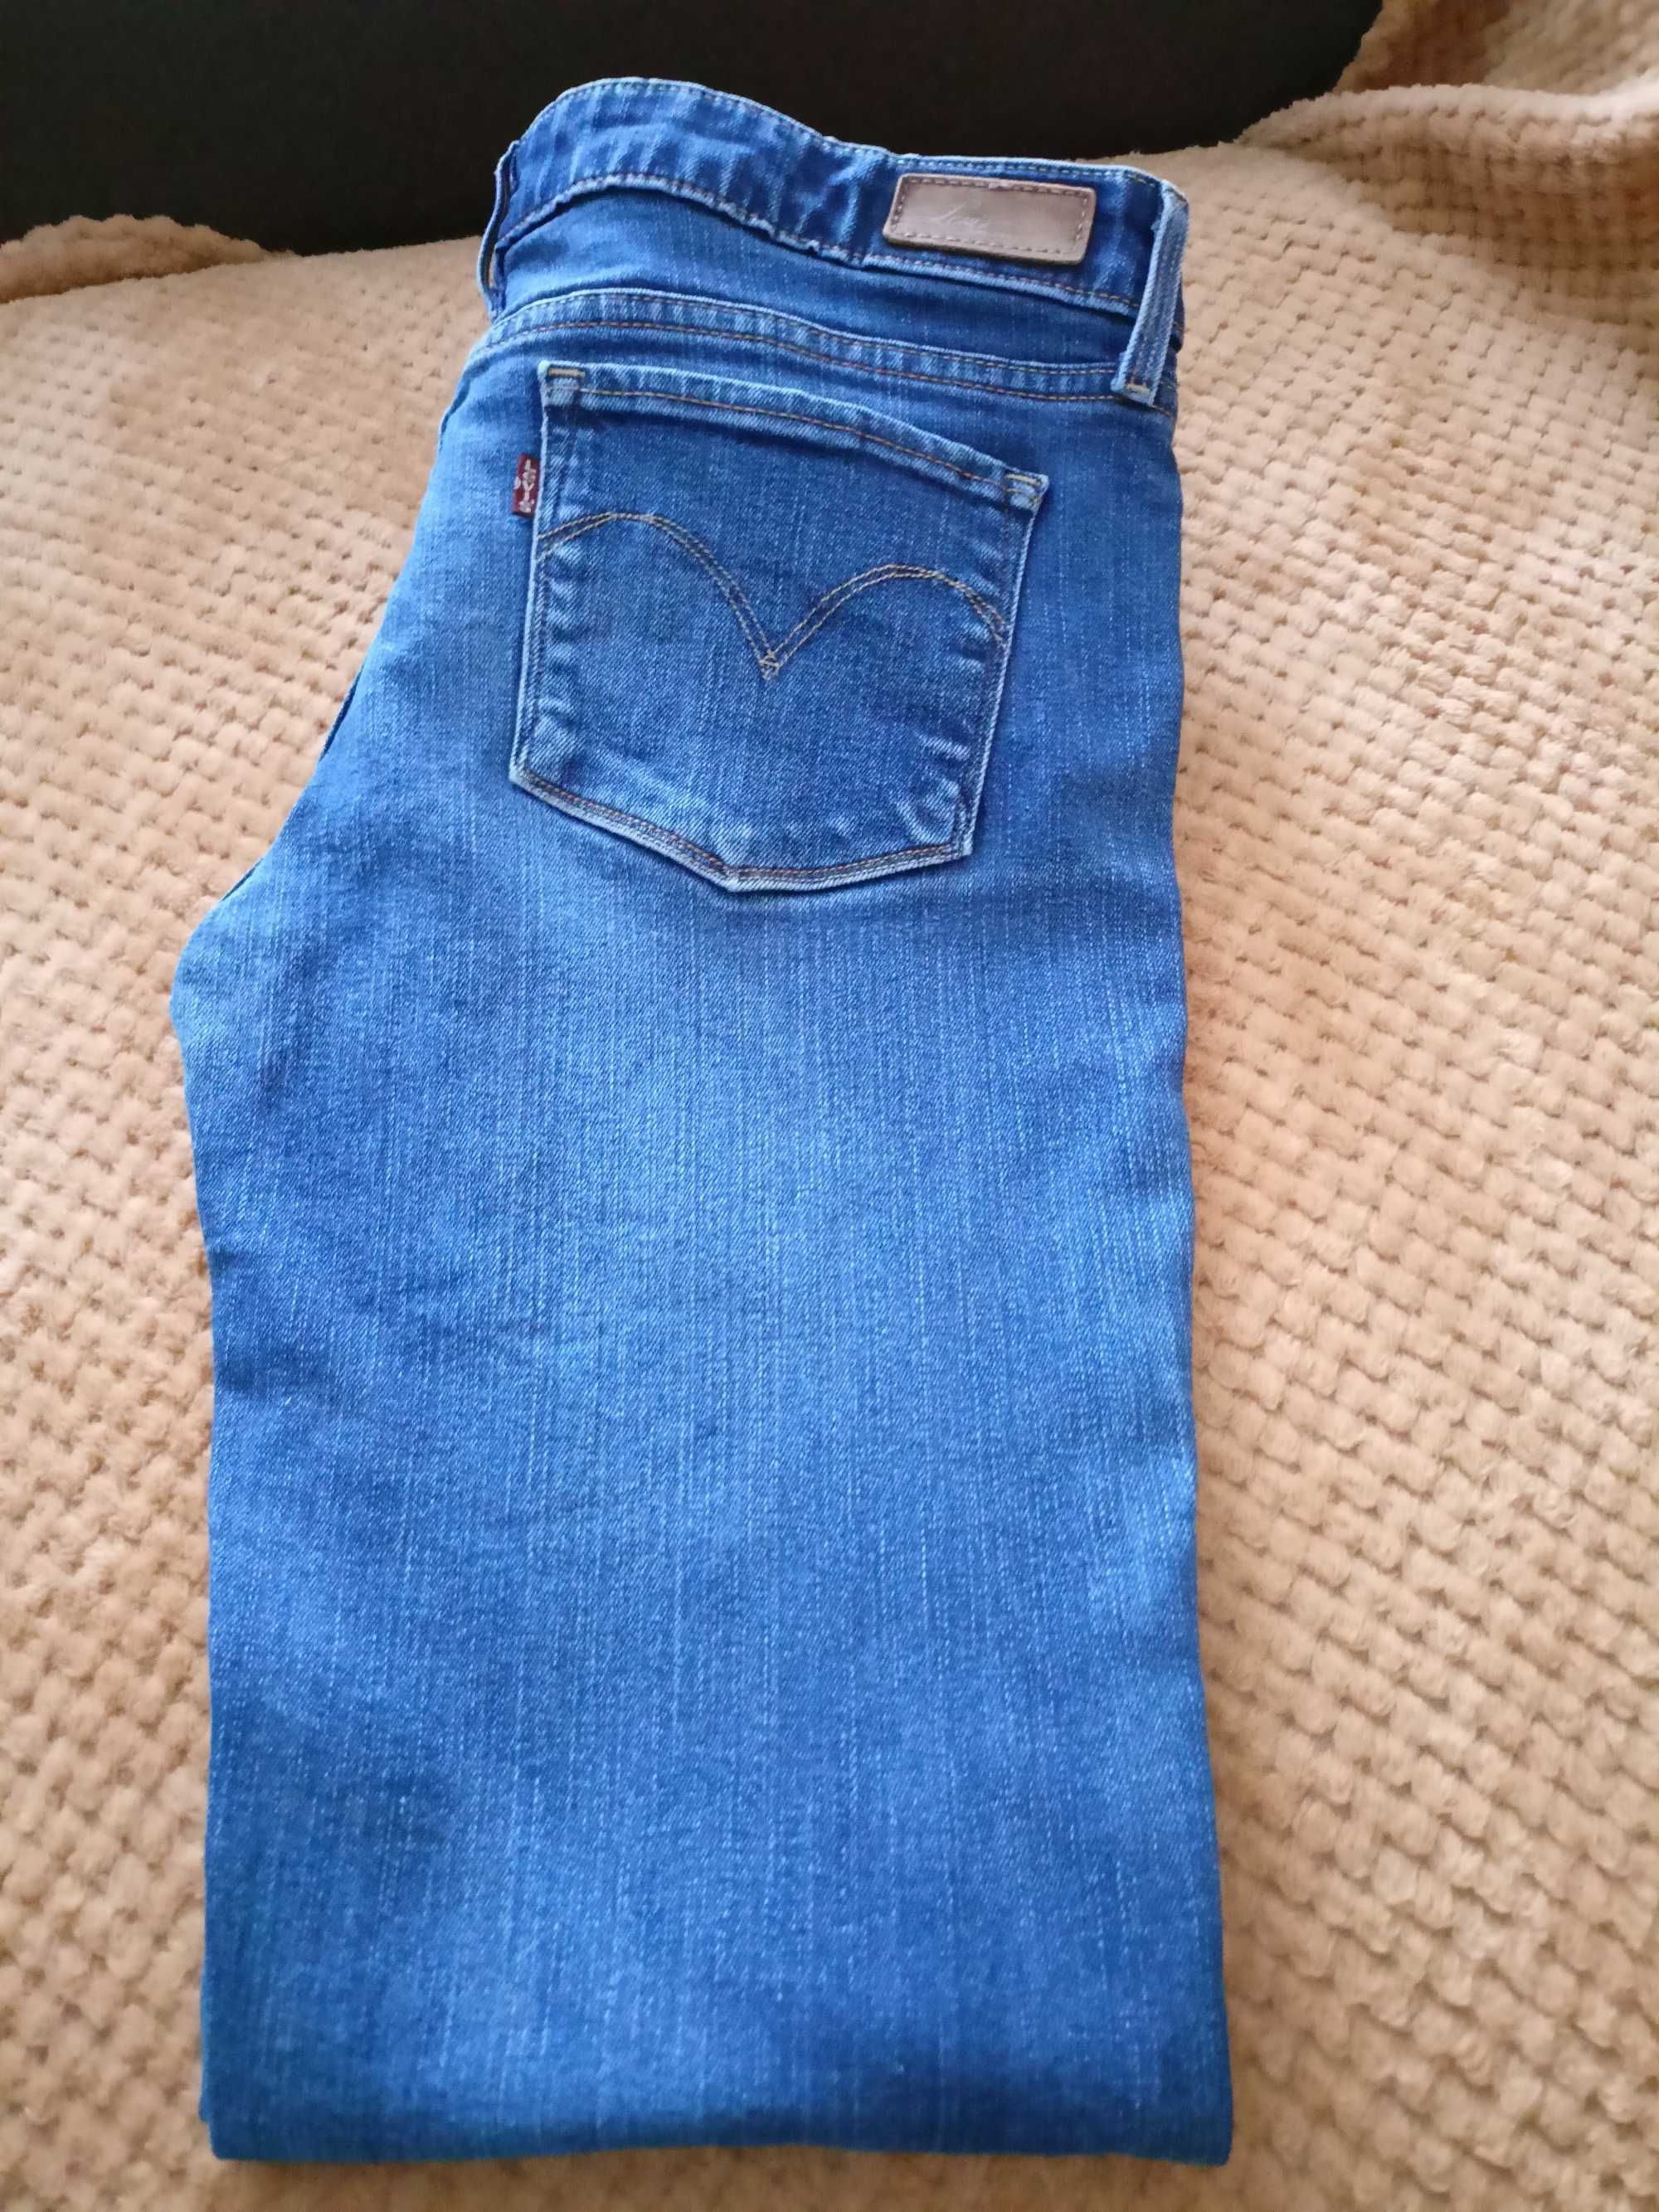 Levis jeans 30x34